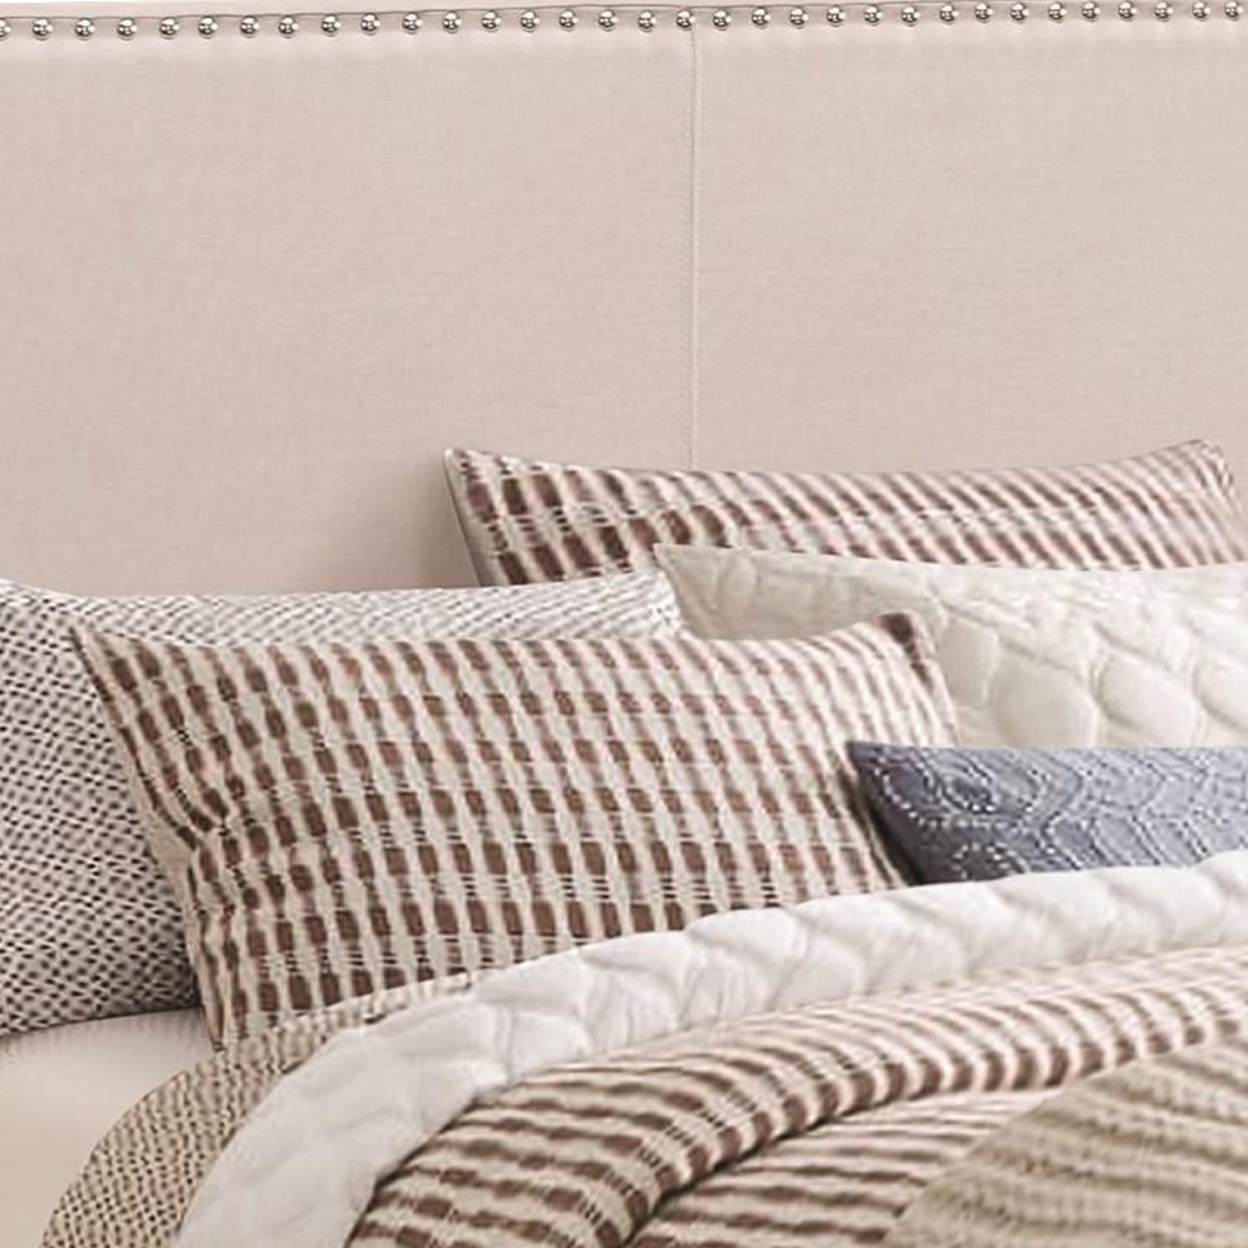 Ivory Upholstered Full Bed- Saltoro Sherpi